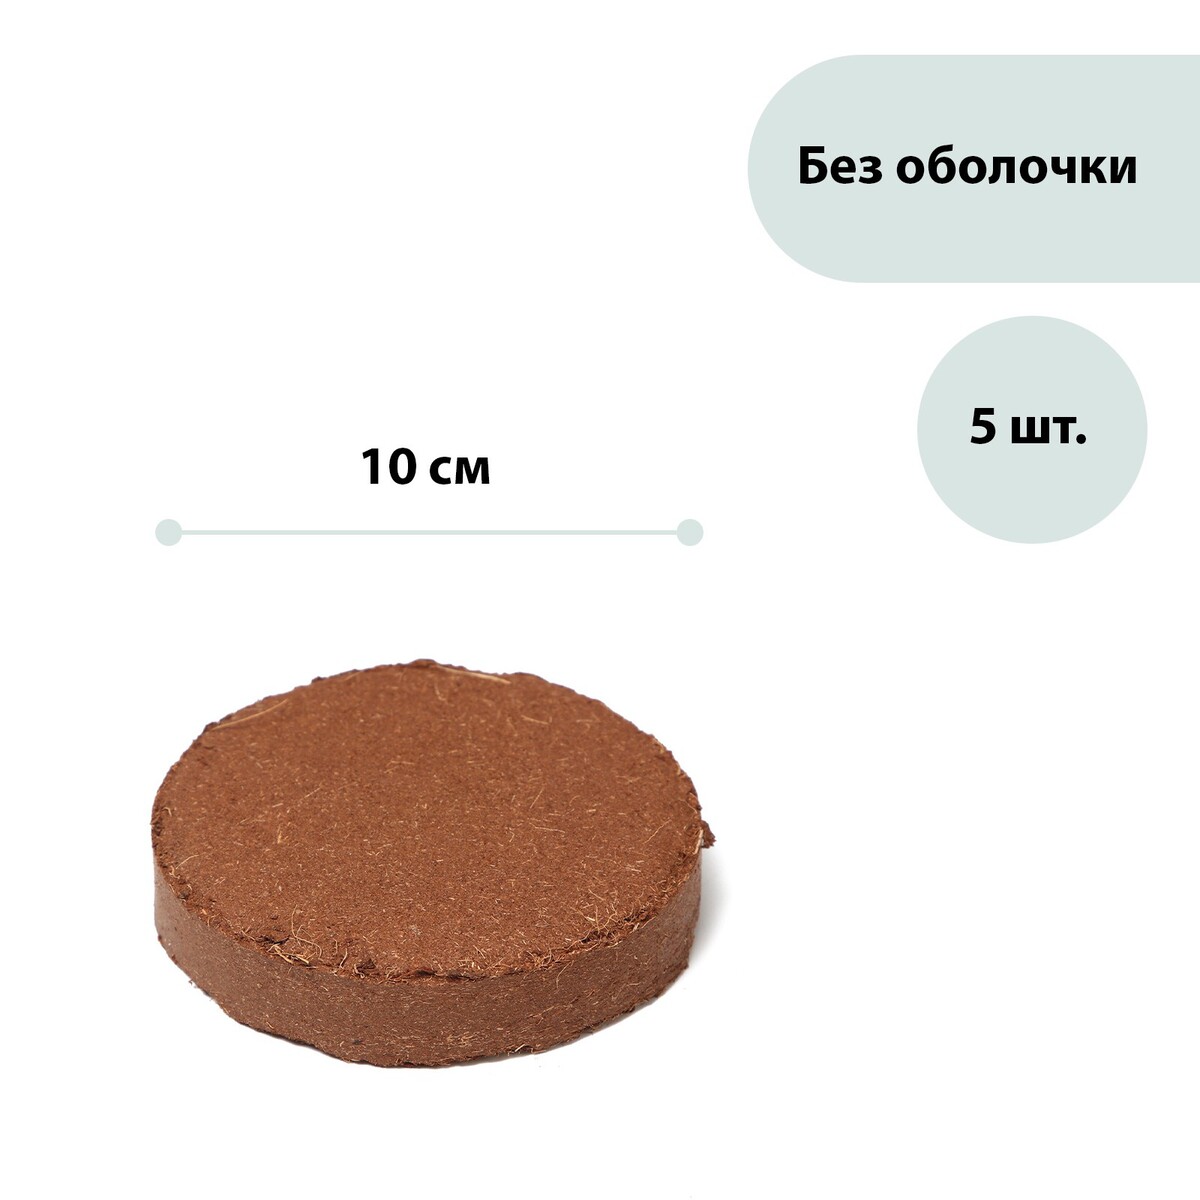 Субстрат кокосовый в таблетках, 4,5 л, d = 10 см, набор 5 шт., без оболочки, greengo поплавок дозатор classic круглый для химии в таблетках kokido aq12219